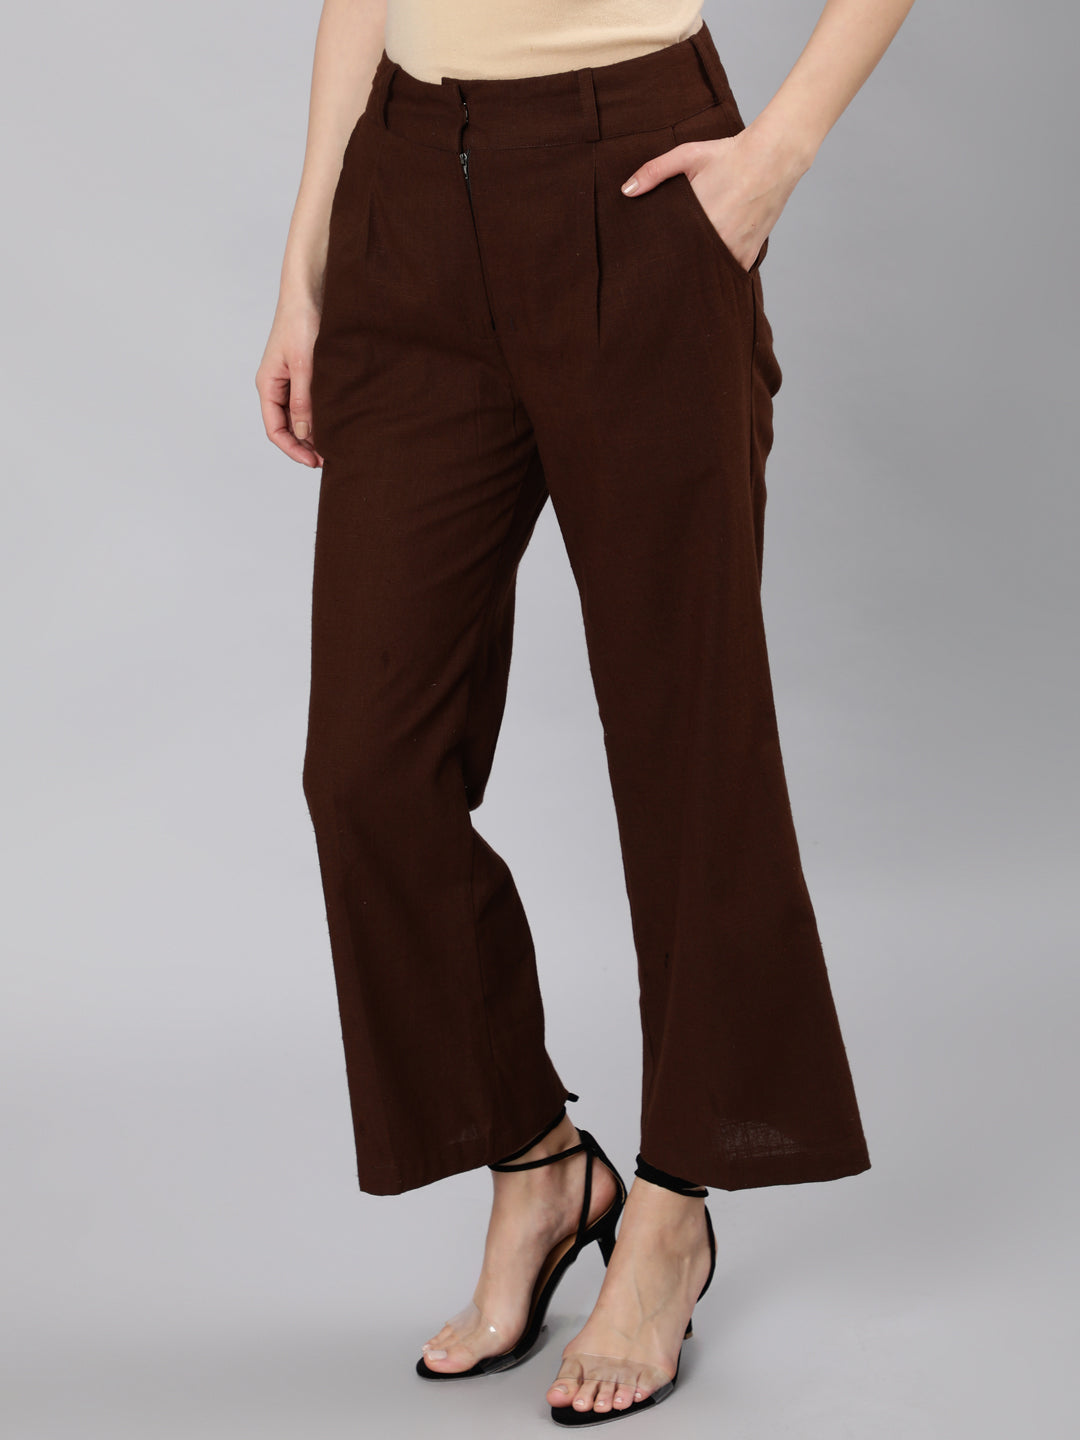 Shop parallel pants for women